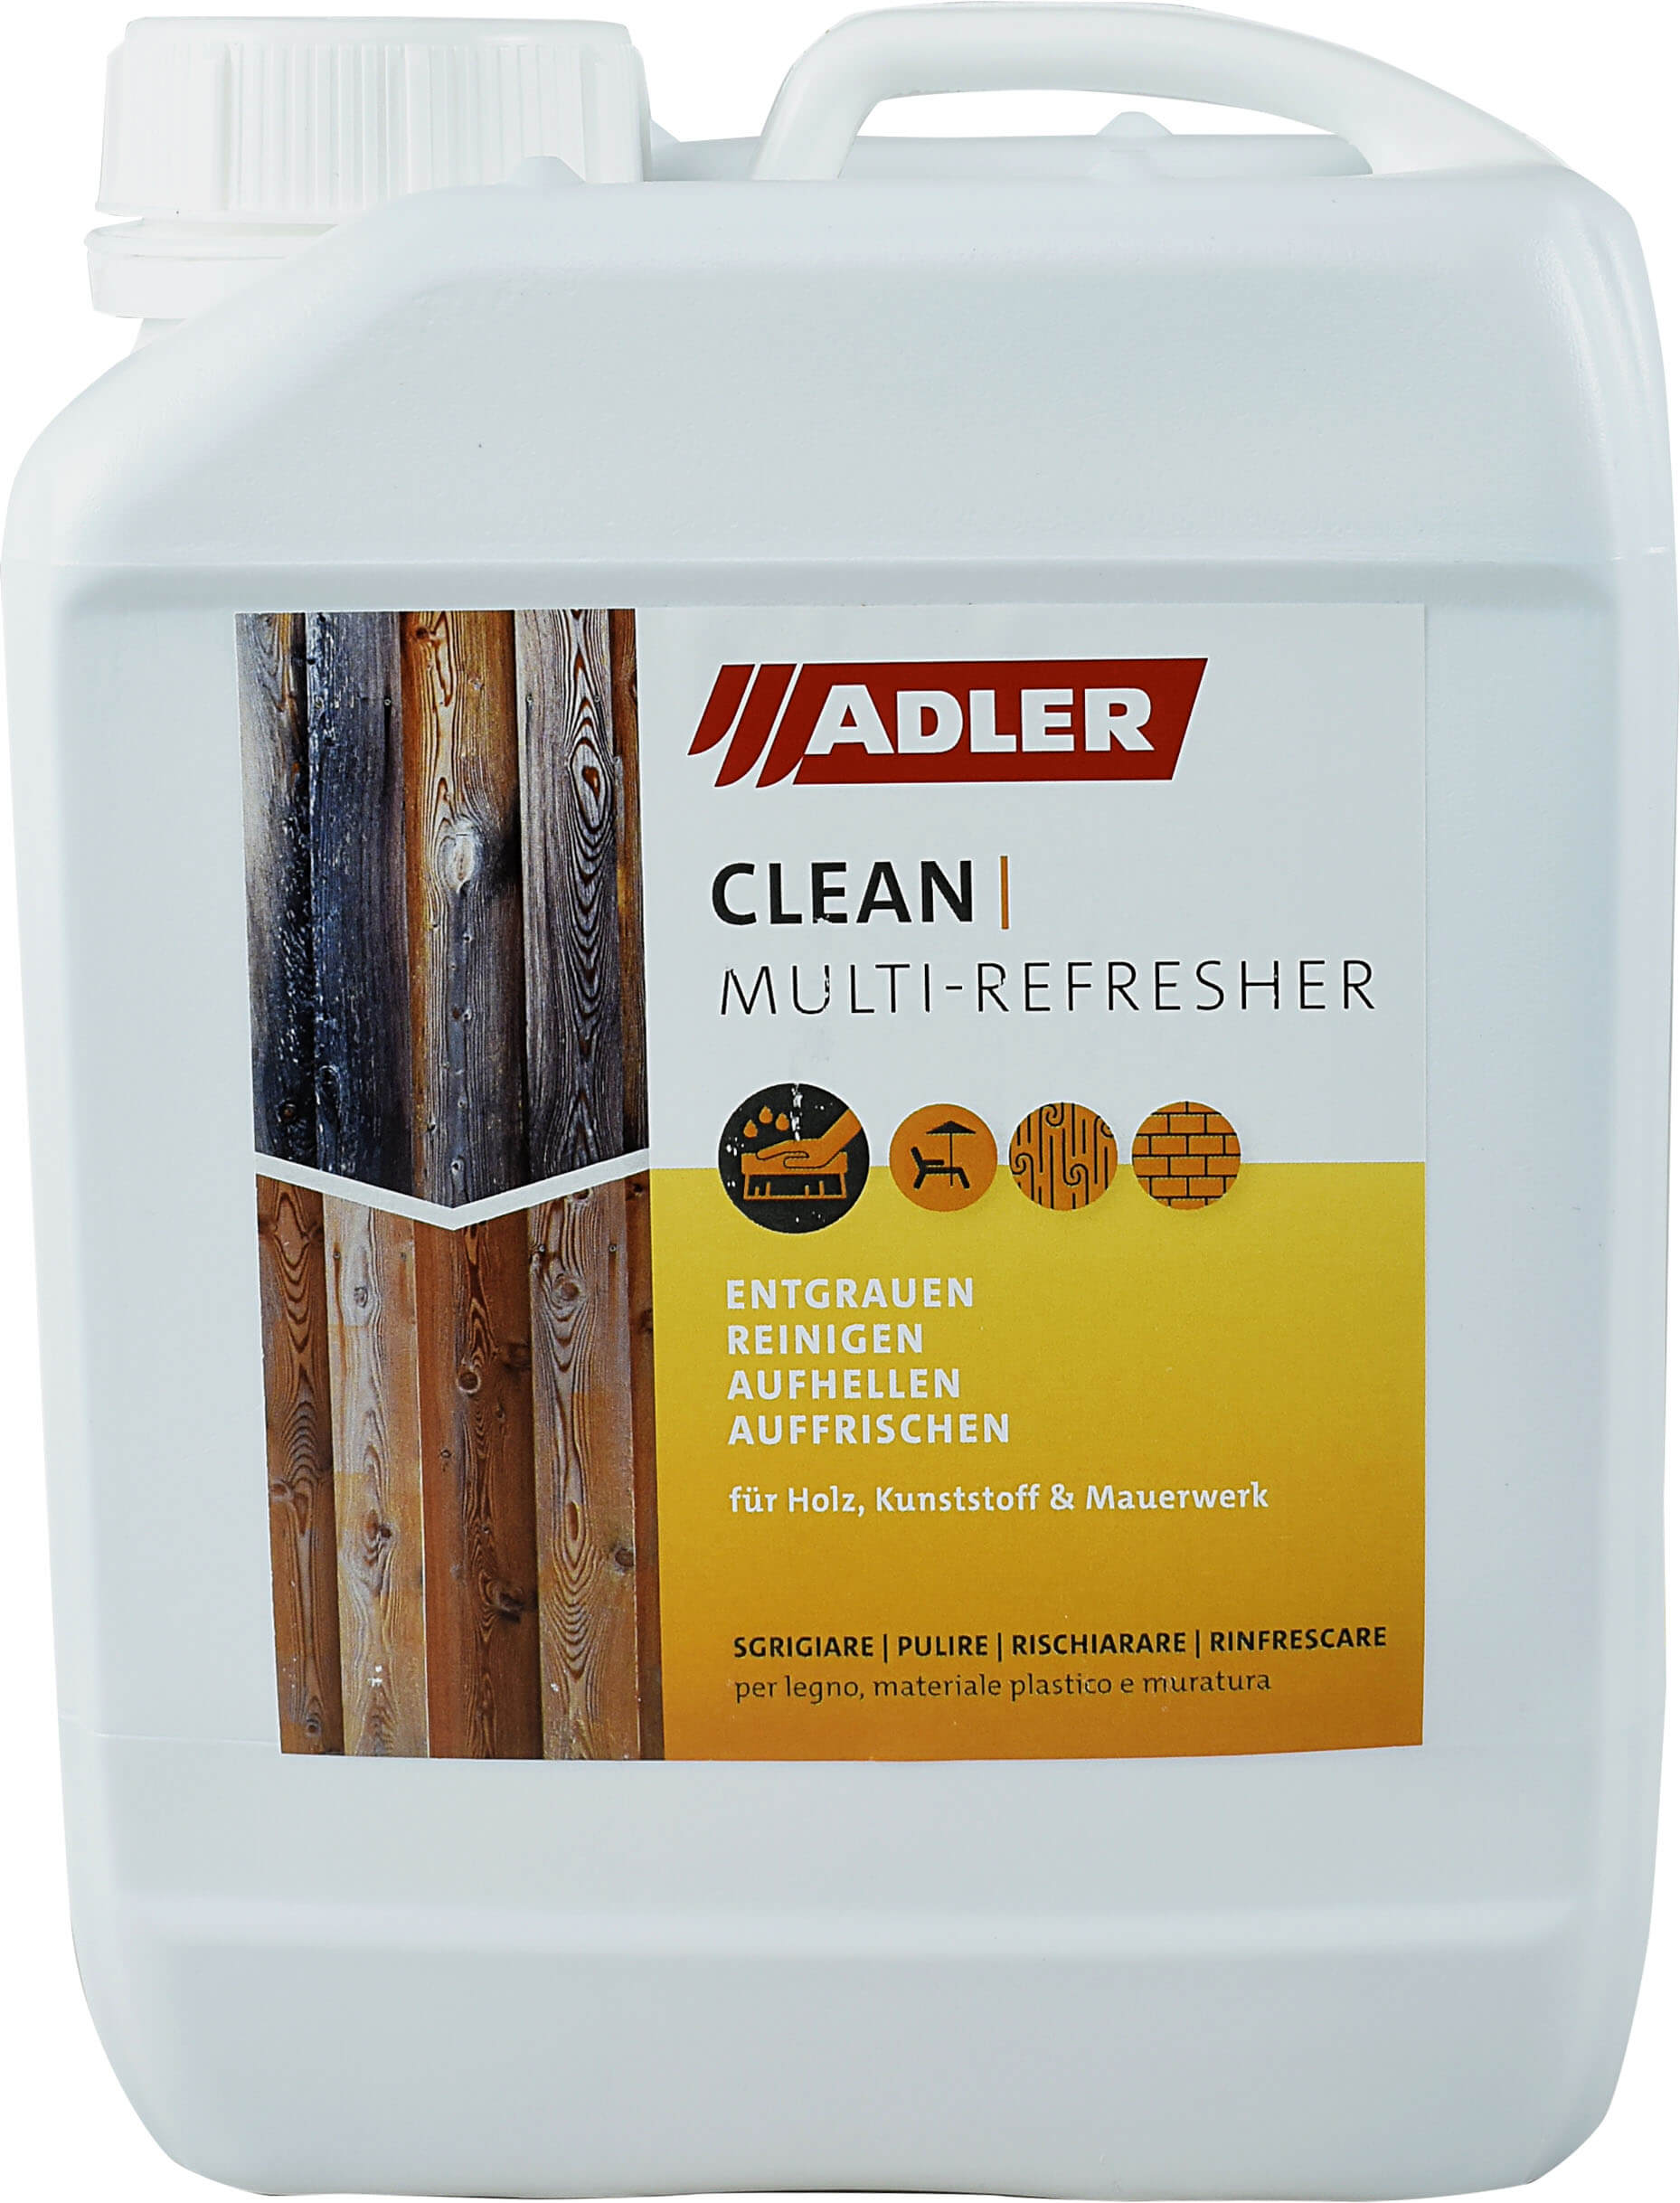 ADLER Clean Multi Refresher - čistič a odšeďovač 2.5 l